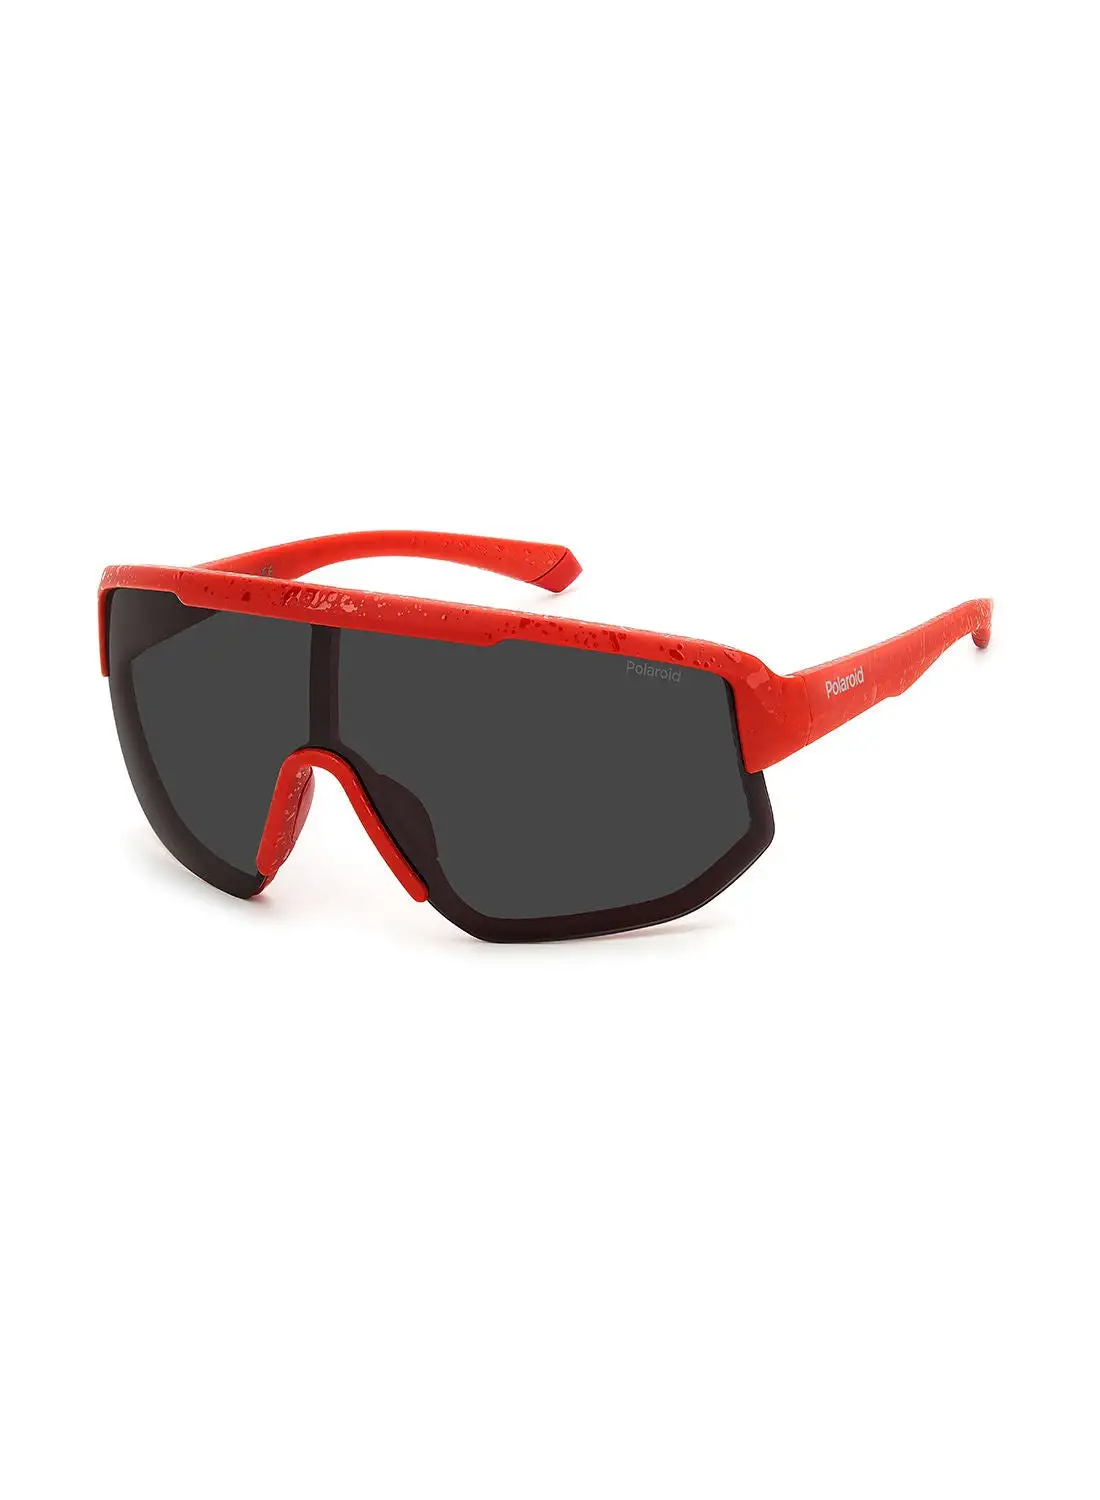 بولارويد نظارة شمسية للجنسين للحماية من الأشعة فوق البنفسجية - Pld 7047/S أحمر مطفي 99 - مقاس العدسة: 99 ملم